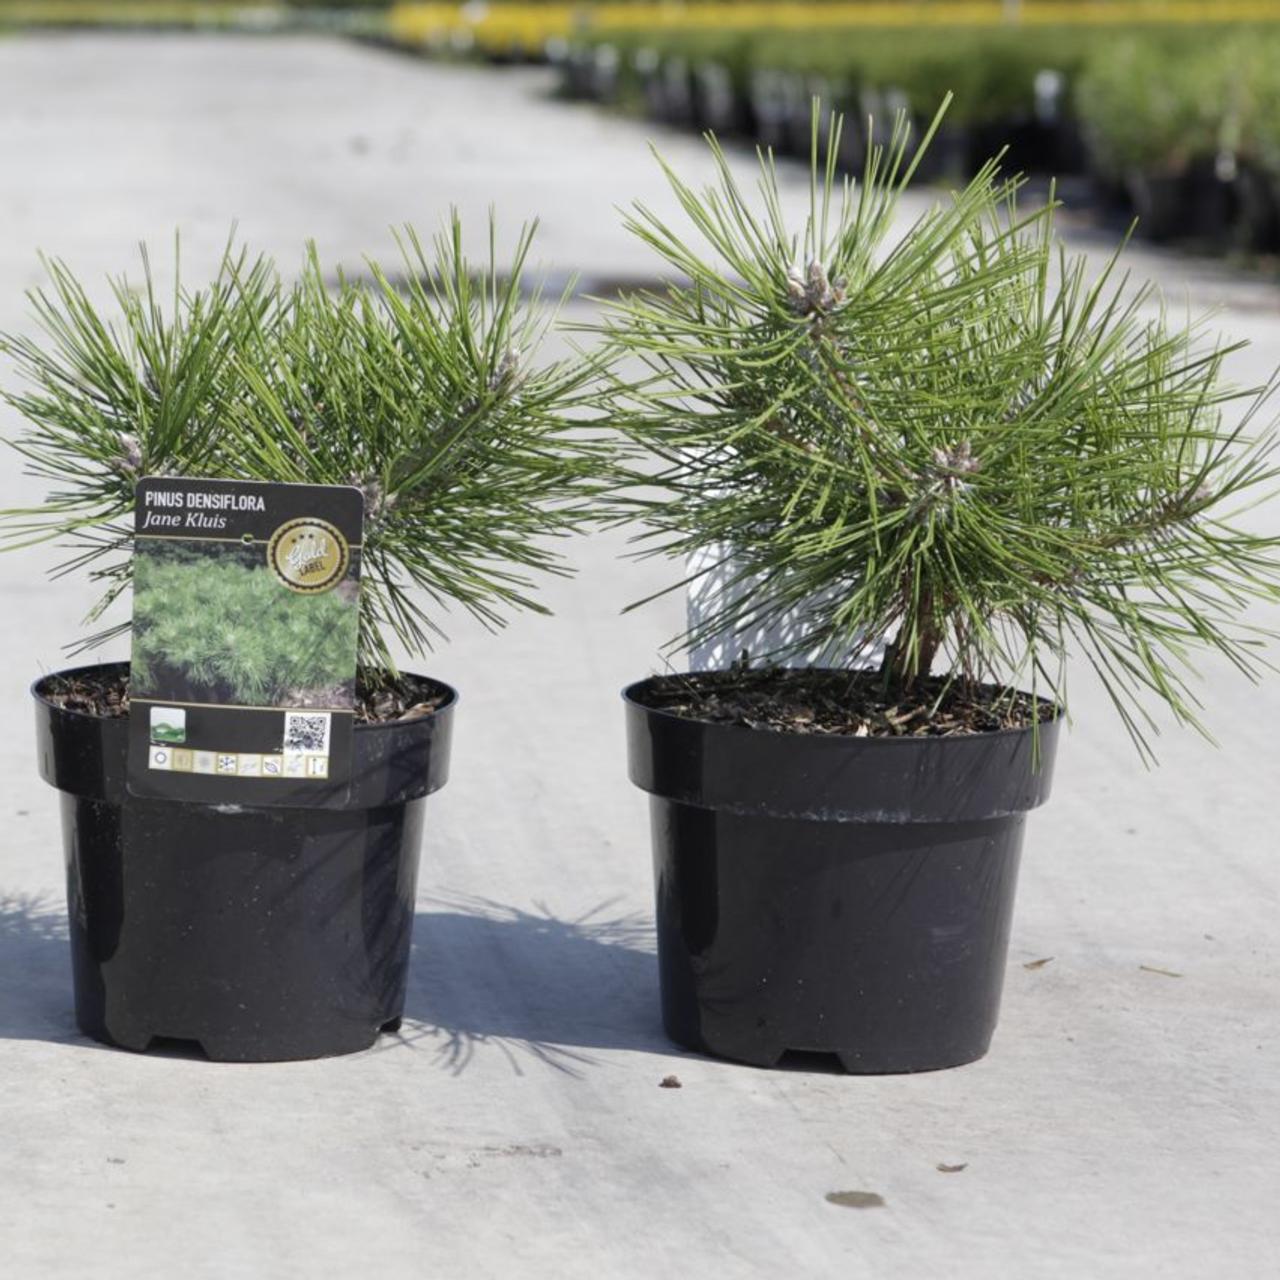 Pinus densiflora 'Jane Kluis' plant